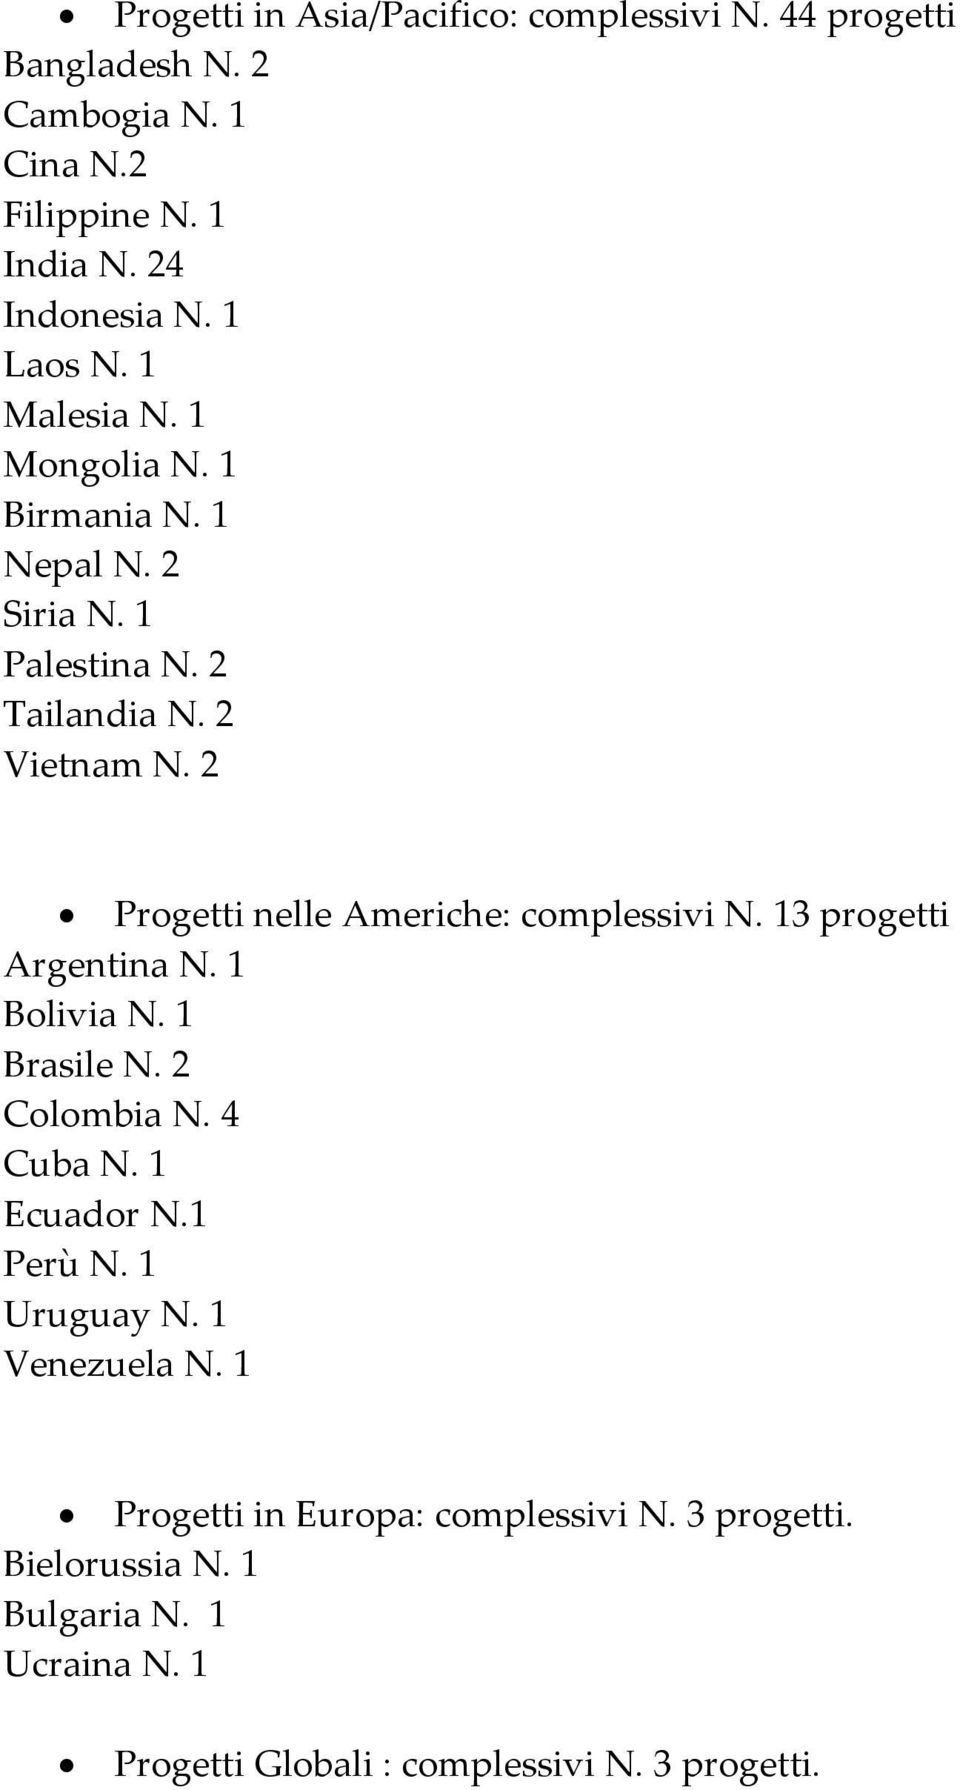 2 Progetti nelle Americhe: complessivi 3 progetti Argentina Bolivia Brasile N. 2 Colombia N. 4 Cuba Ecuador N.